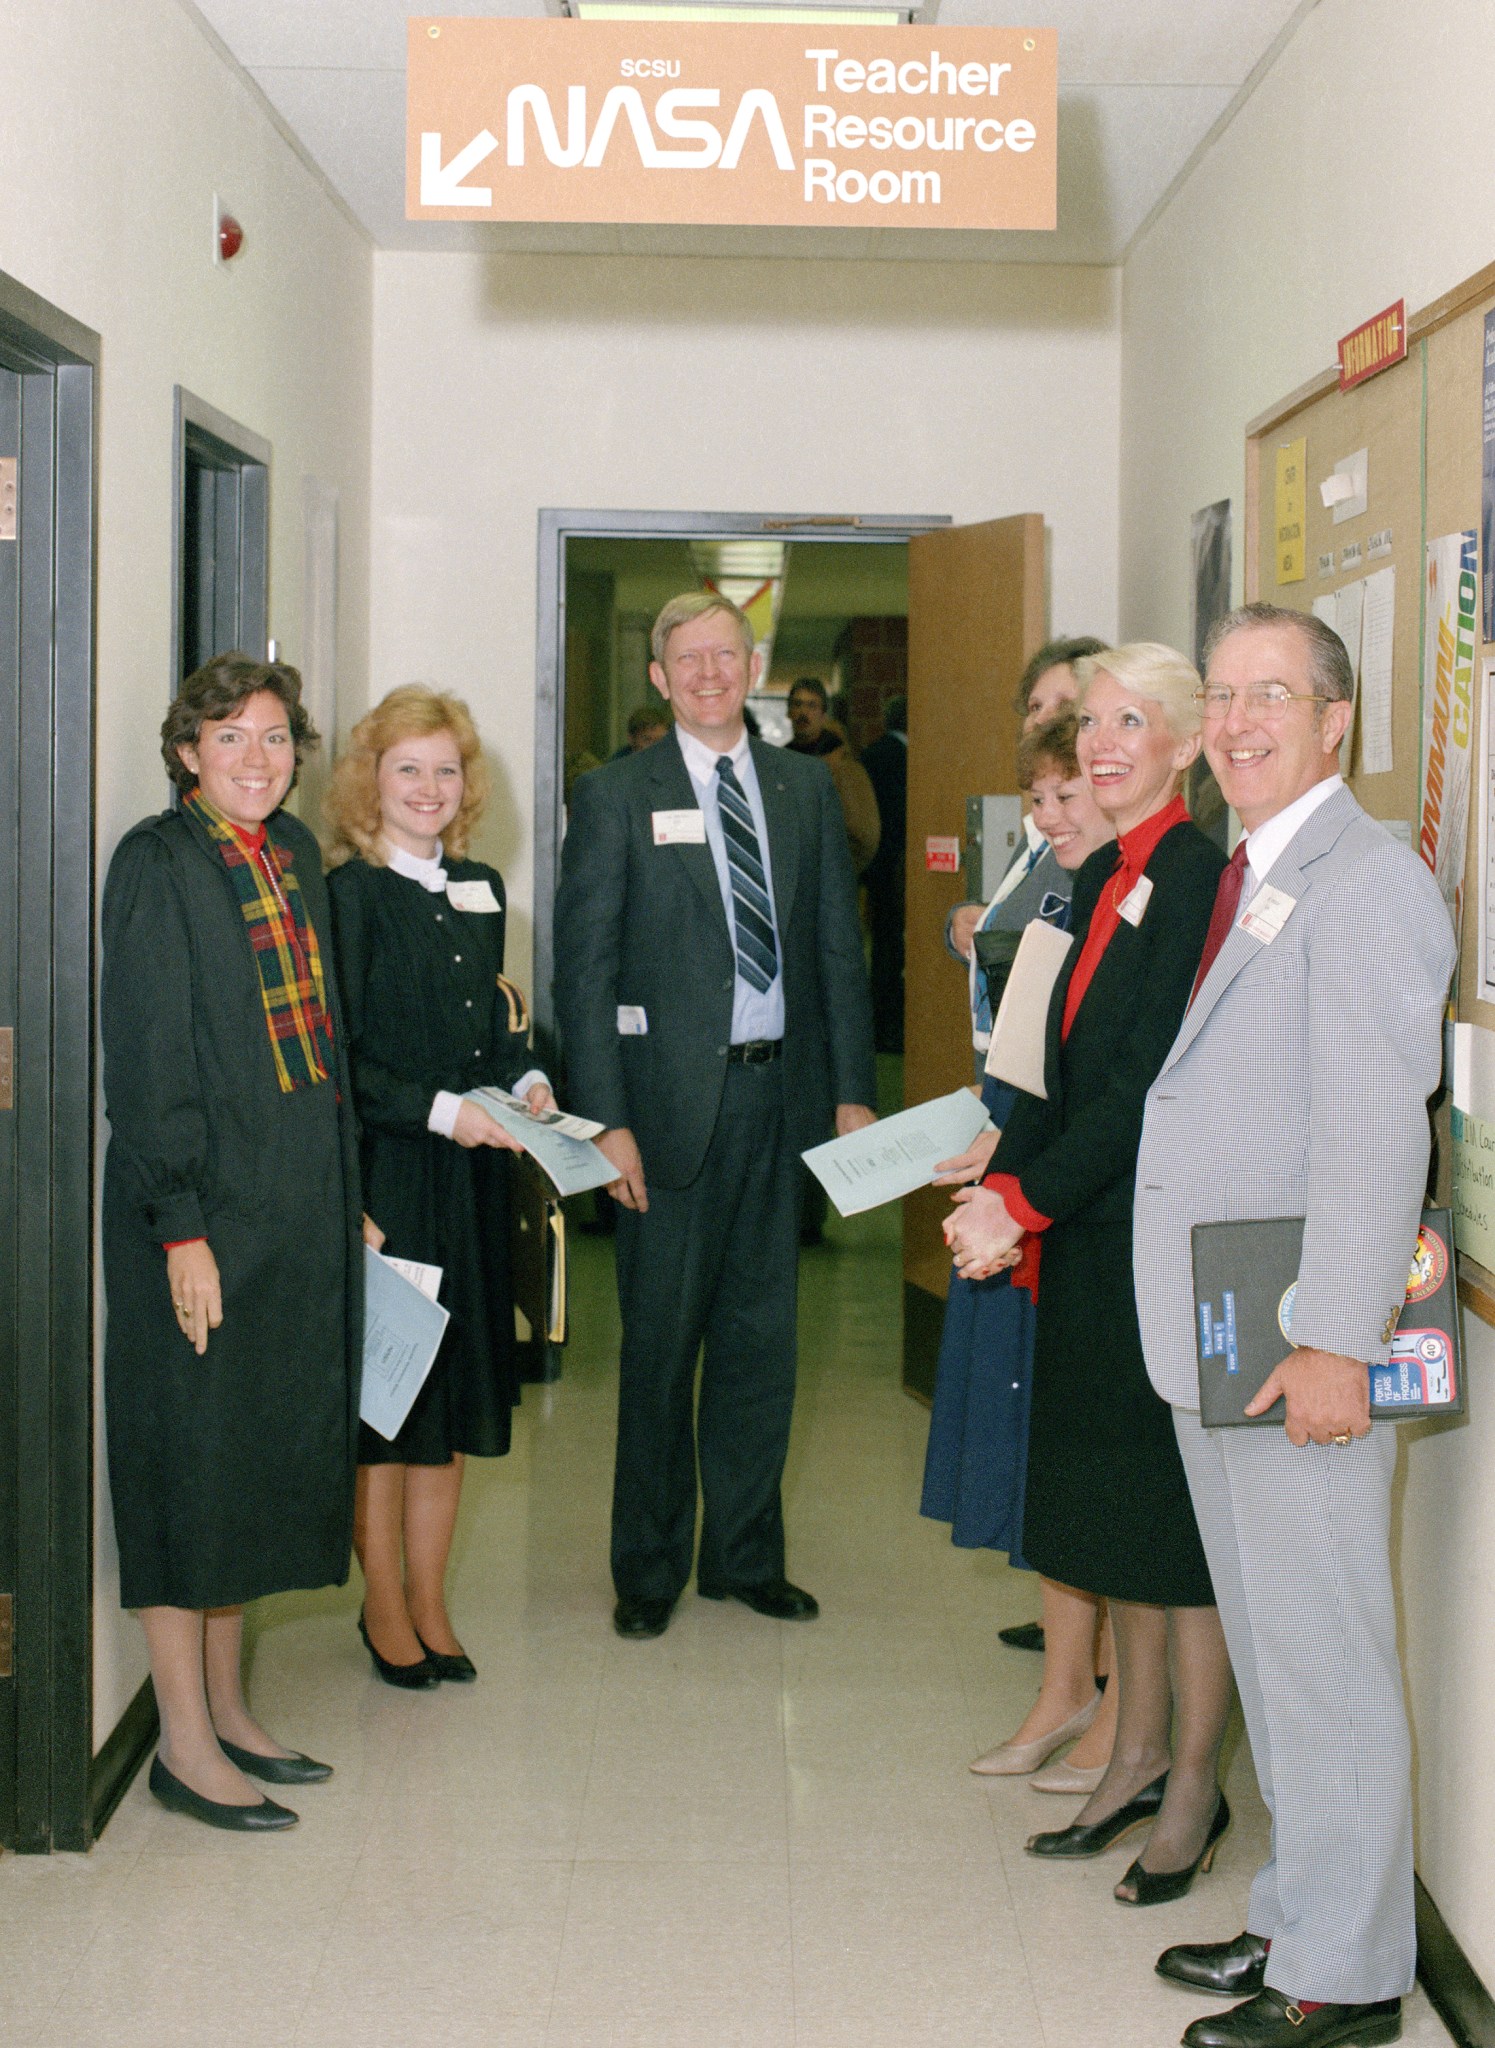 Group of teachers standing in hallway.